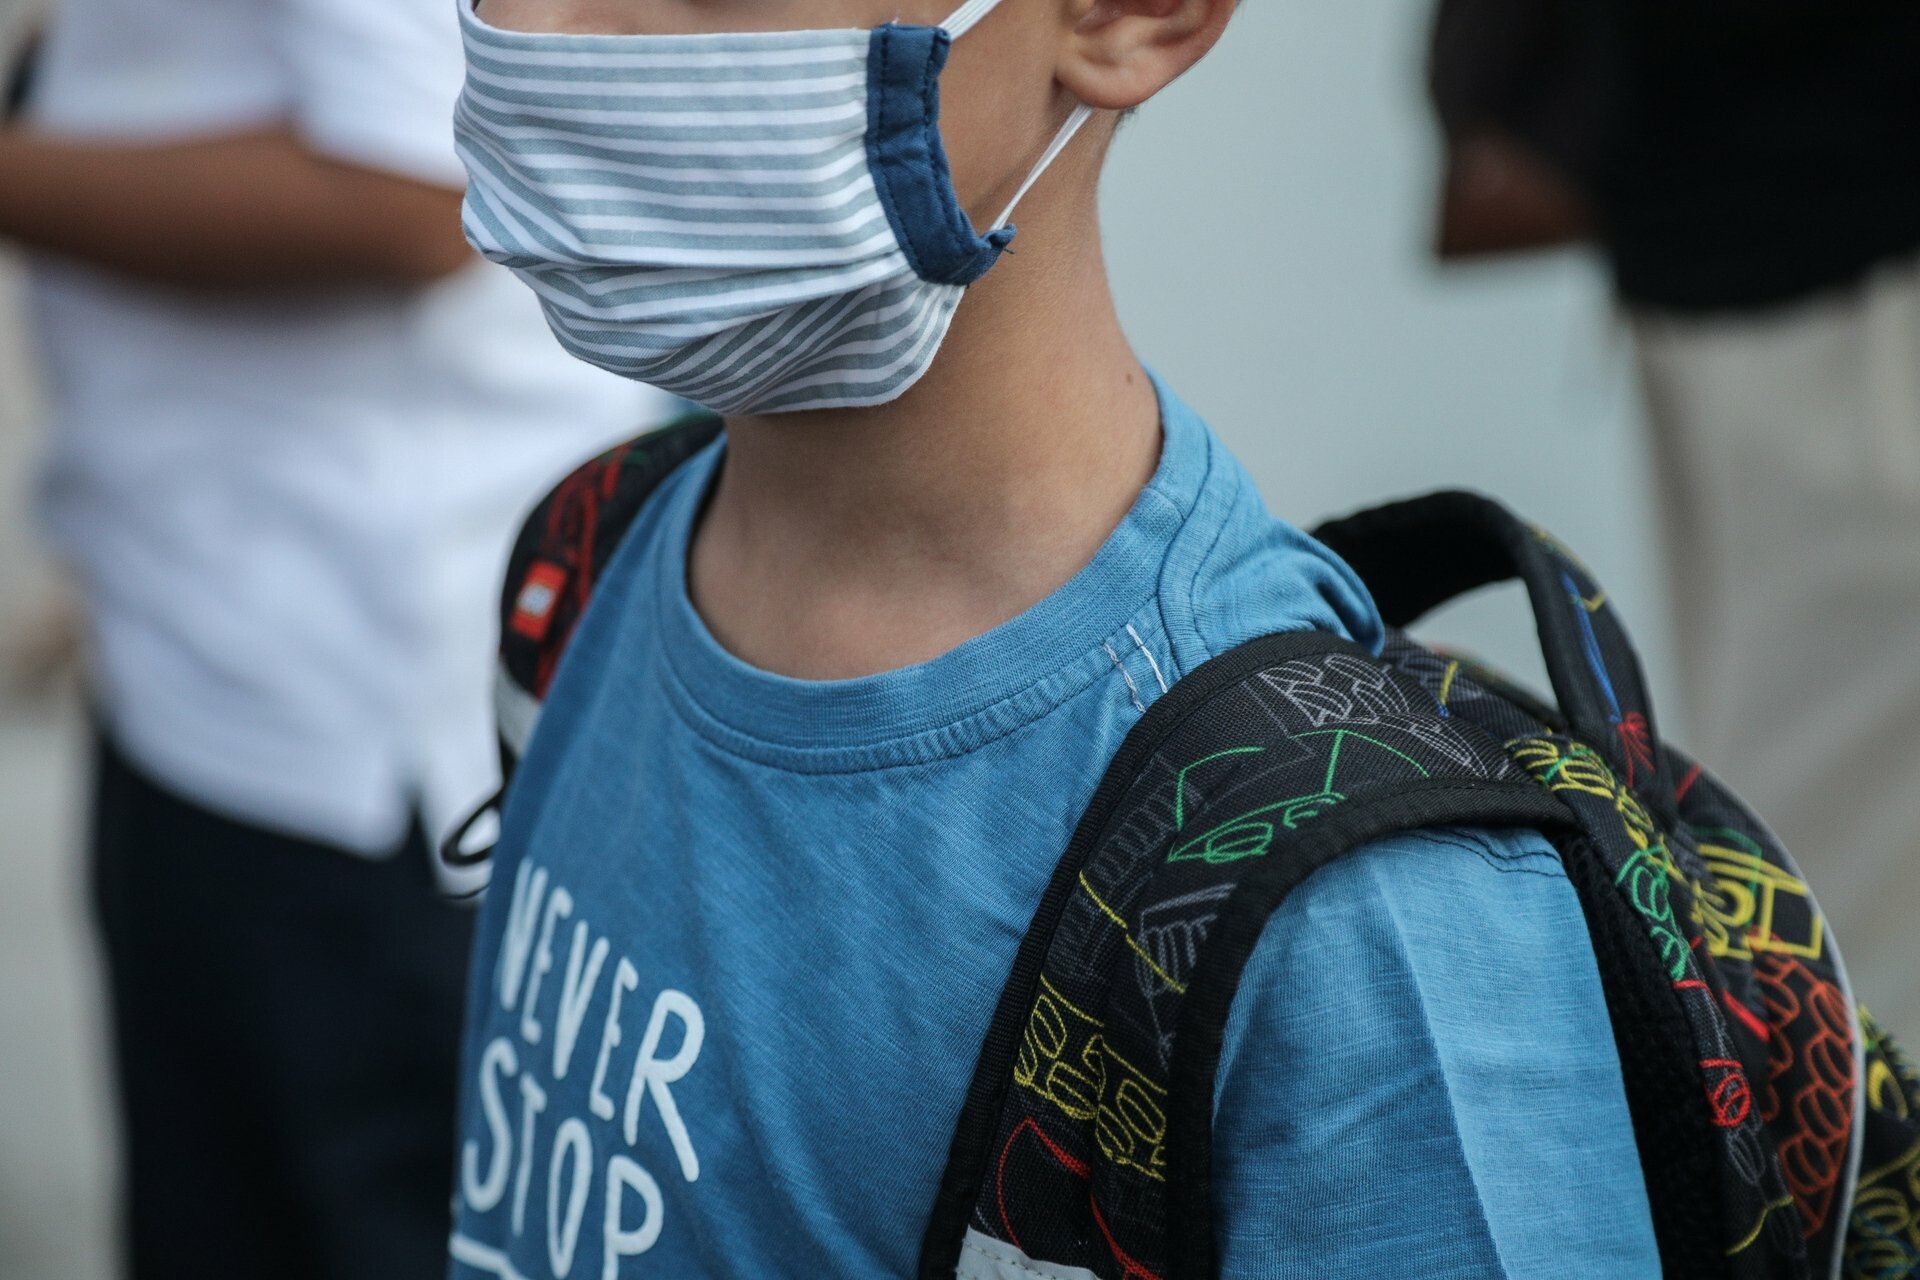 Εικόνες από την πρώτη ημέρα στα σχολεία: Με μάσκες και αποστάσεις οι μαθητές